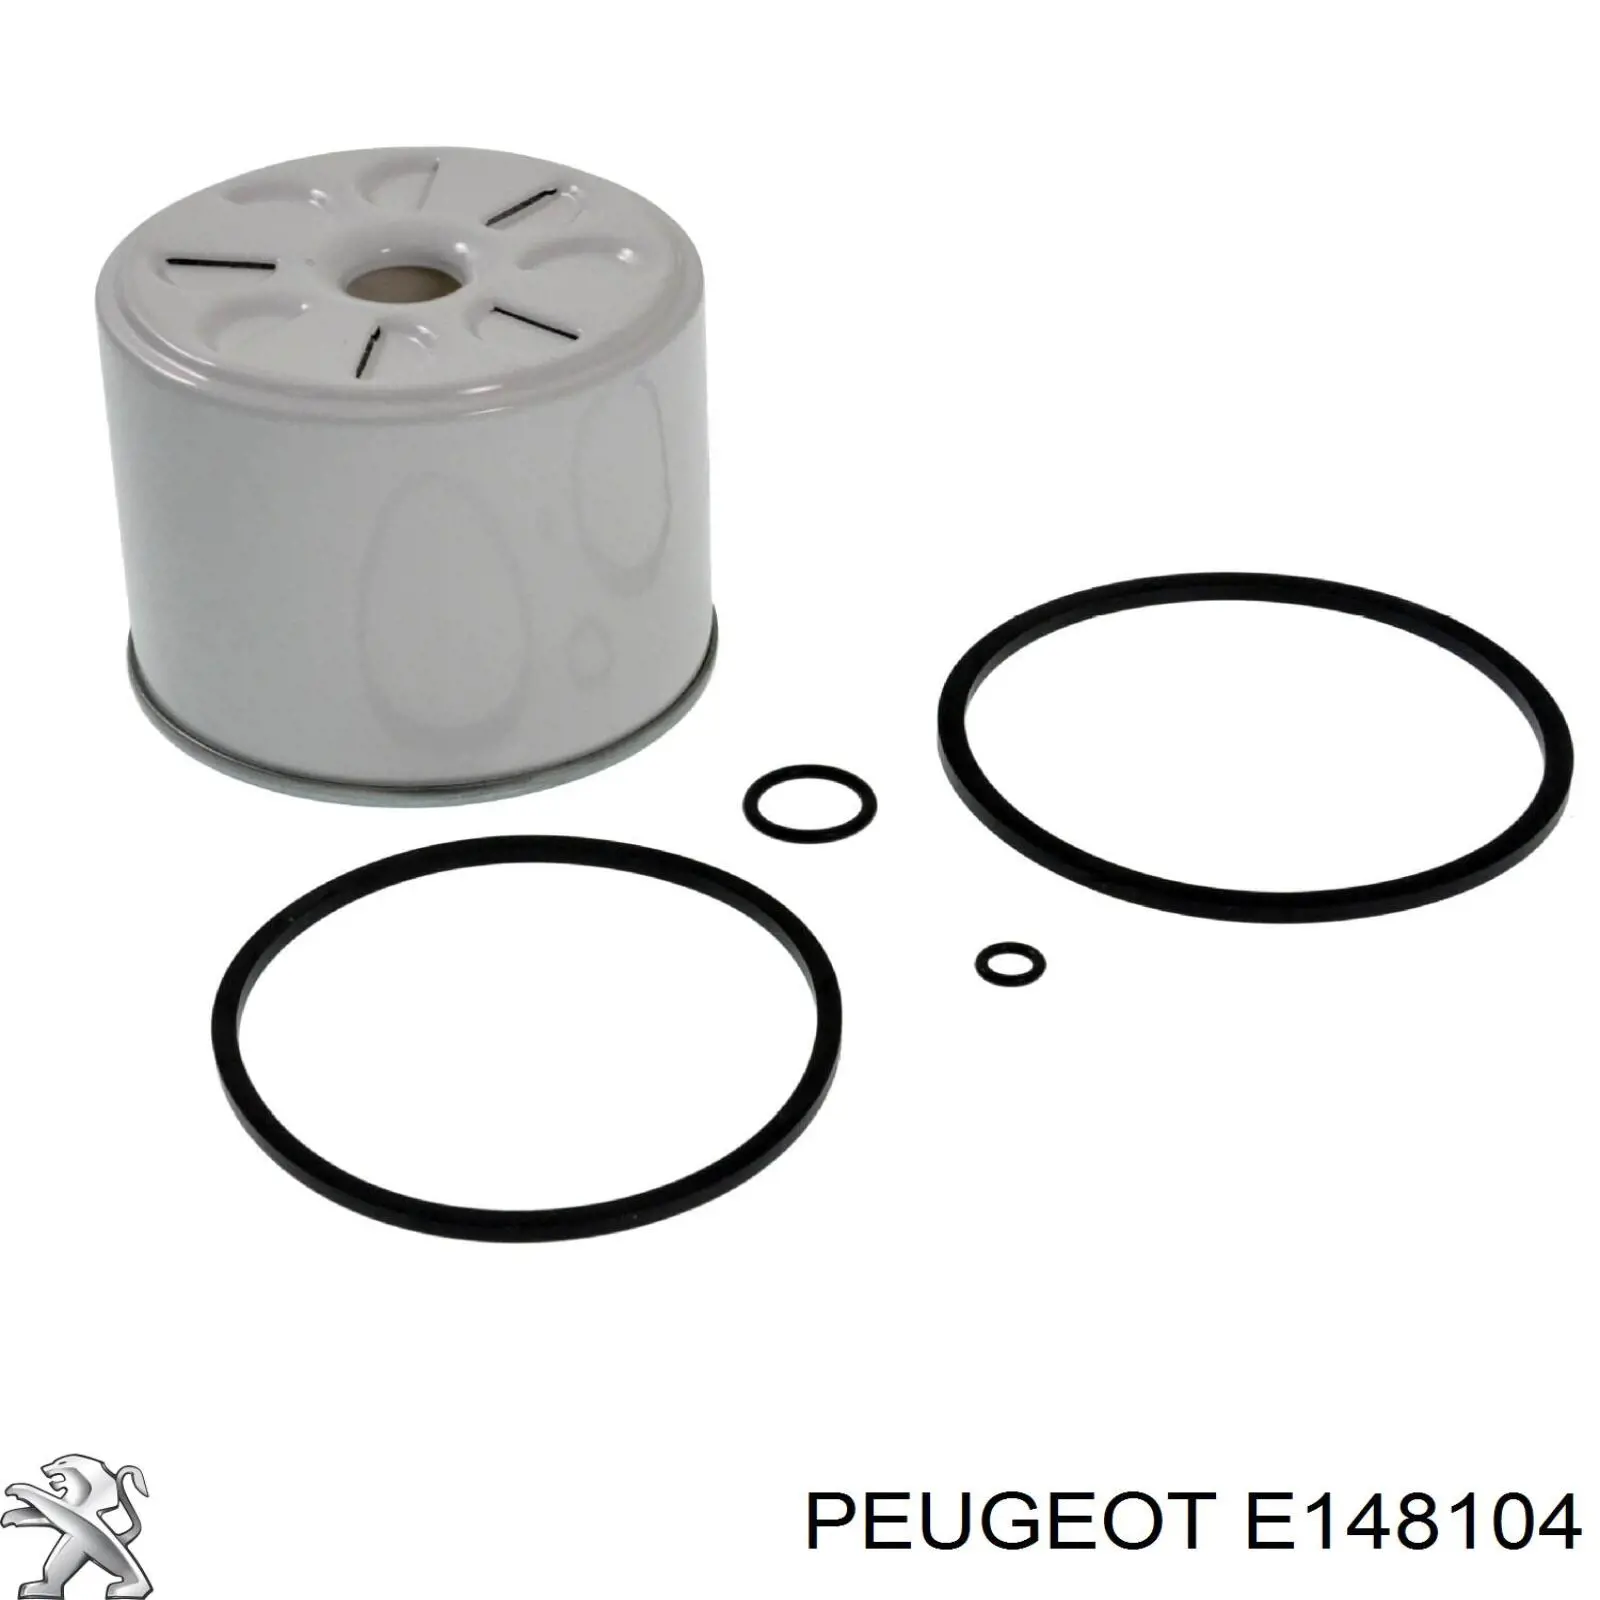 E148104 Peugeot/Citroen filtro combustible